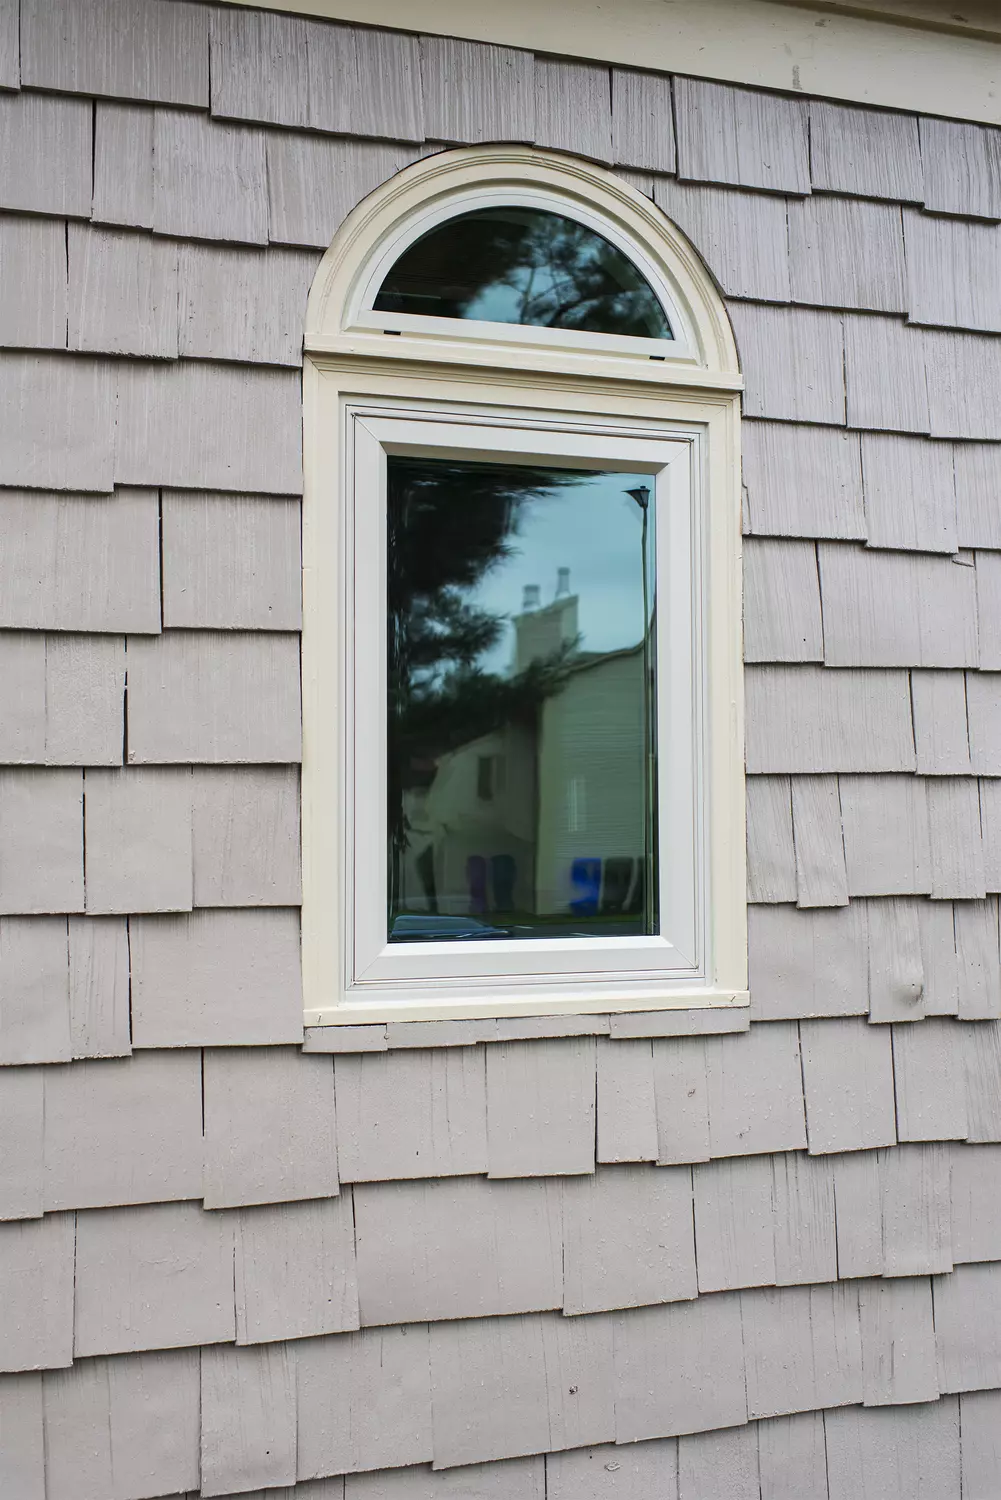 OKNA Insul Tec 500 Series Single Casement With Half Circle Top Beige Color Window - SEVEN SUN CONNECTICUT